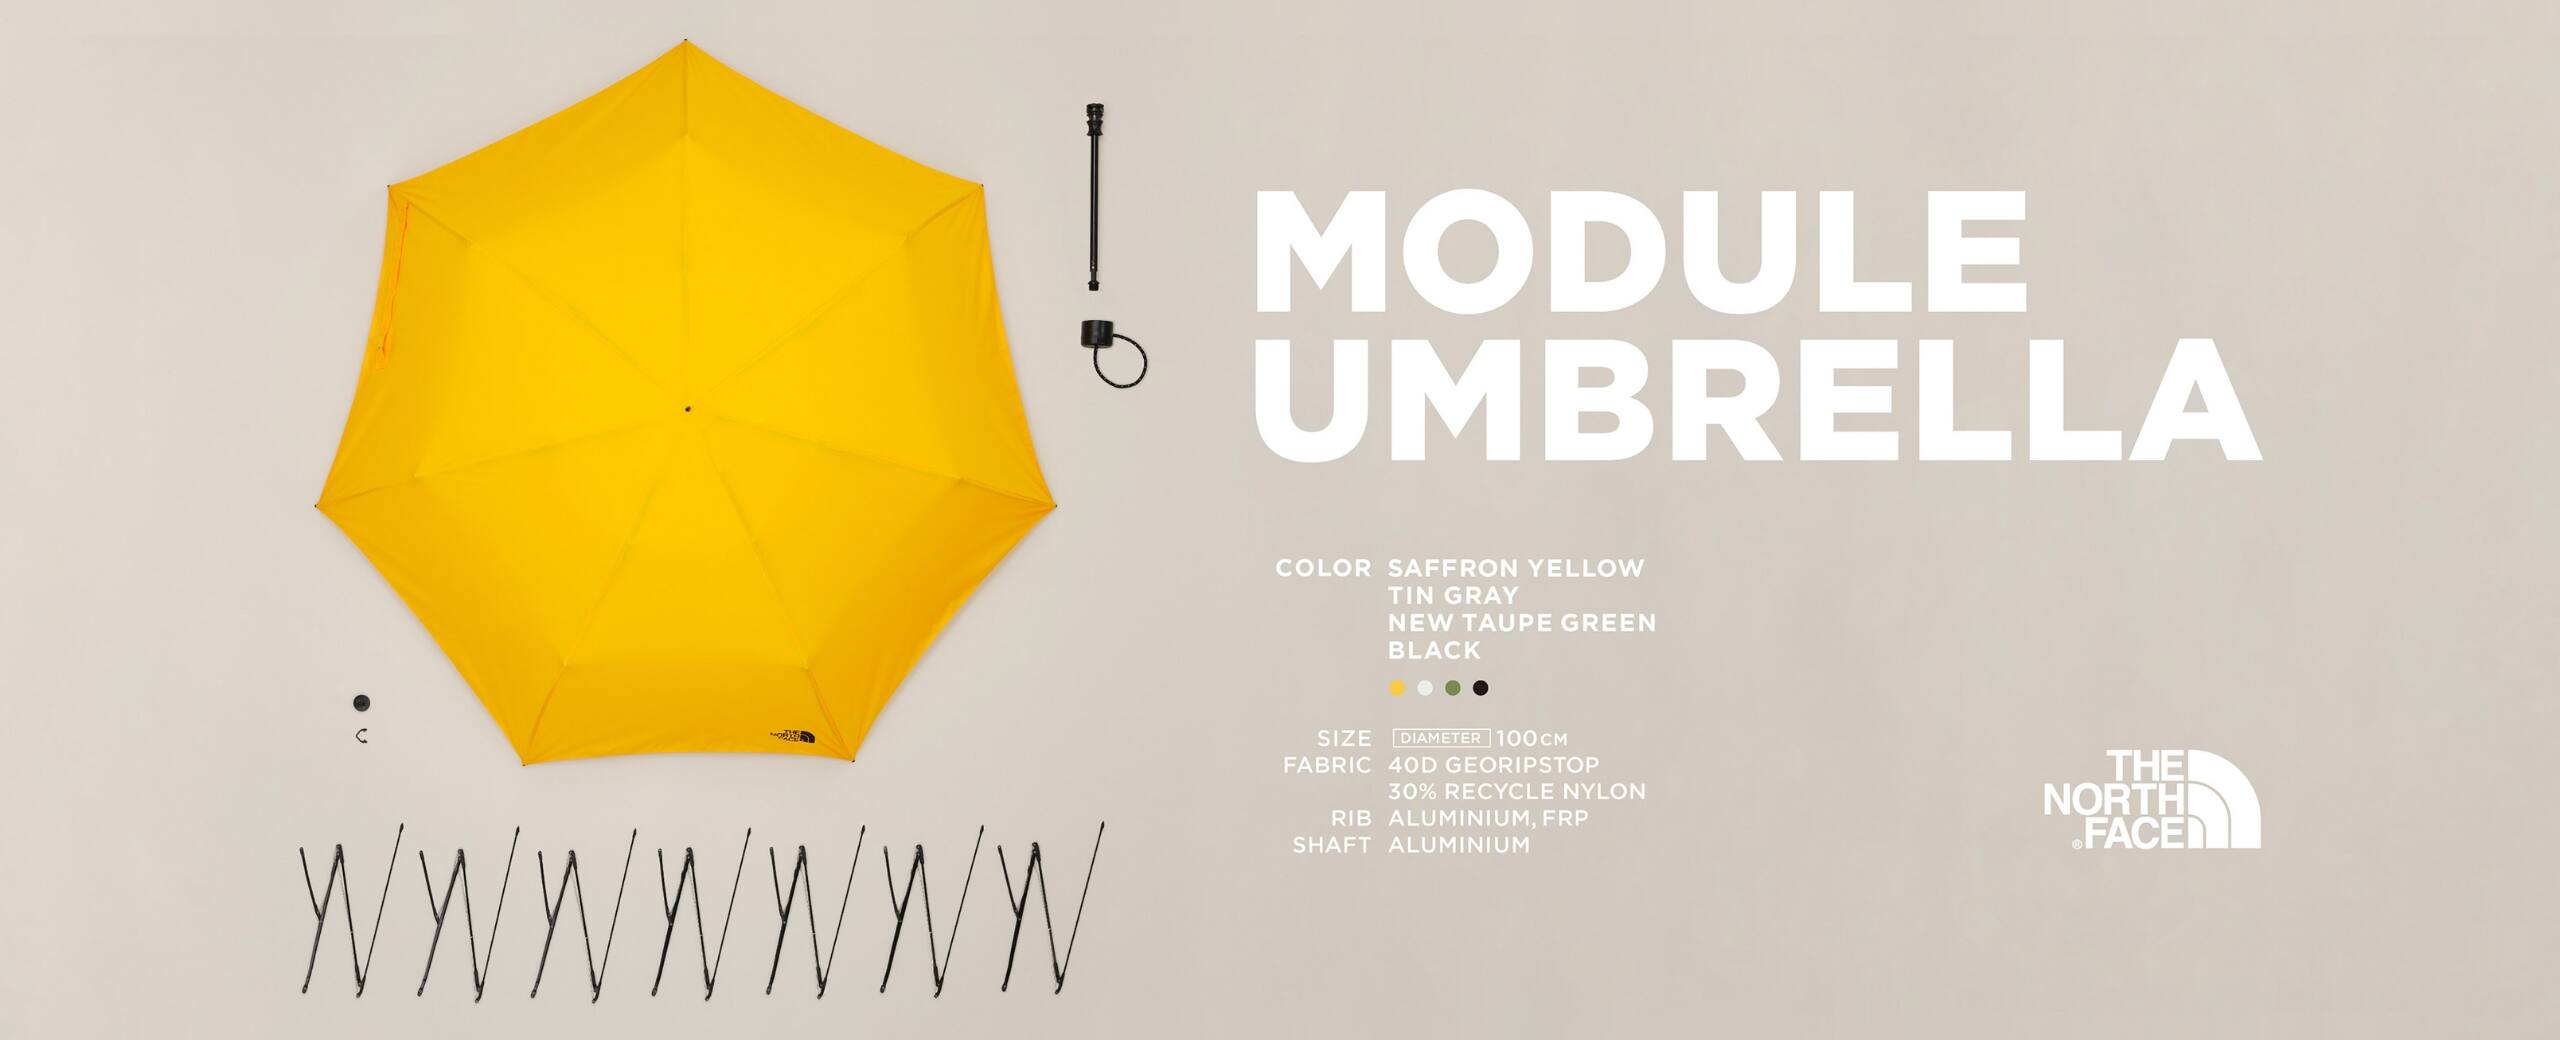 リペア・カスタム可能な折りたたみ傘のニュースタンダード | THE NORTH FACE MODULE UMBLELLA